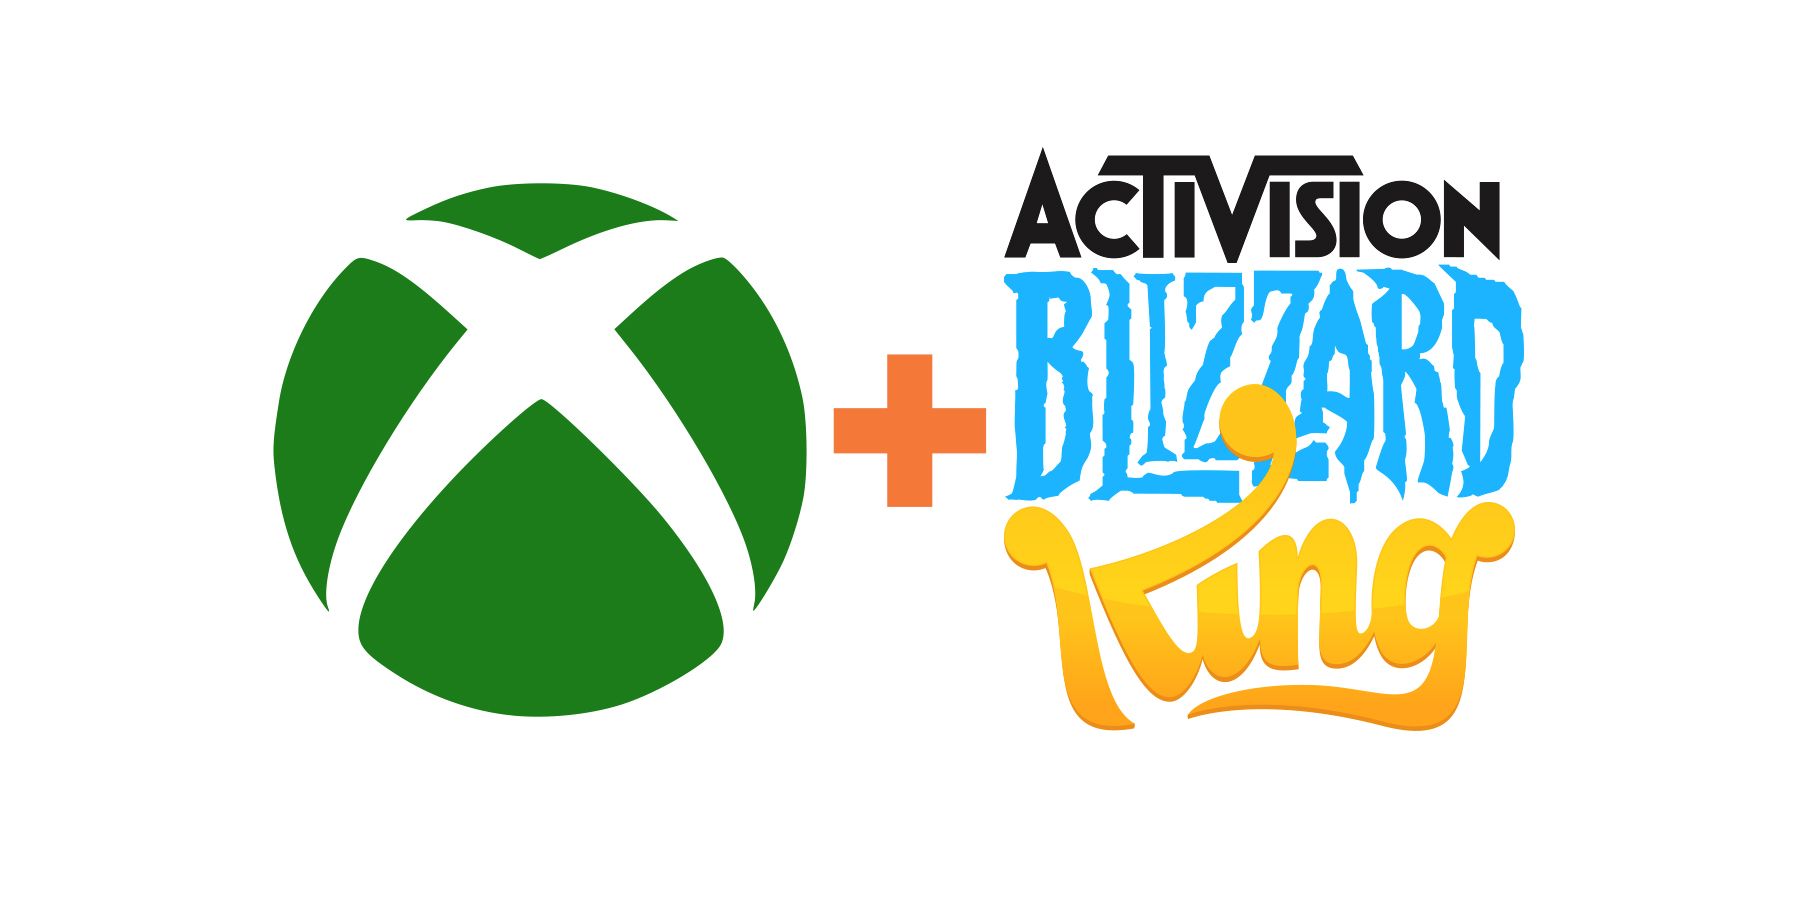 Xbox plus Activision Blizzard King logos on white background